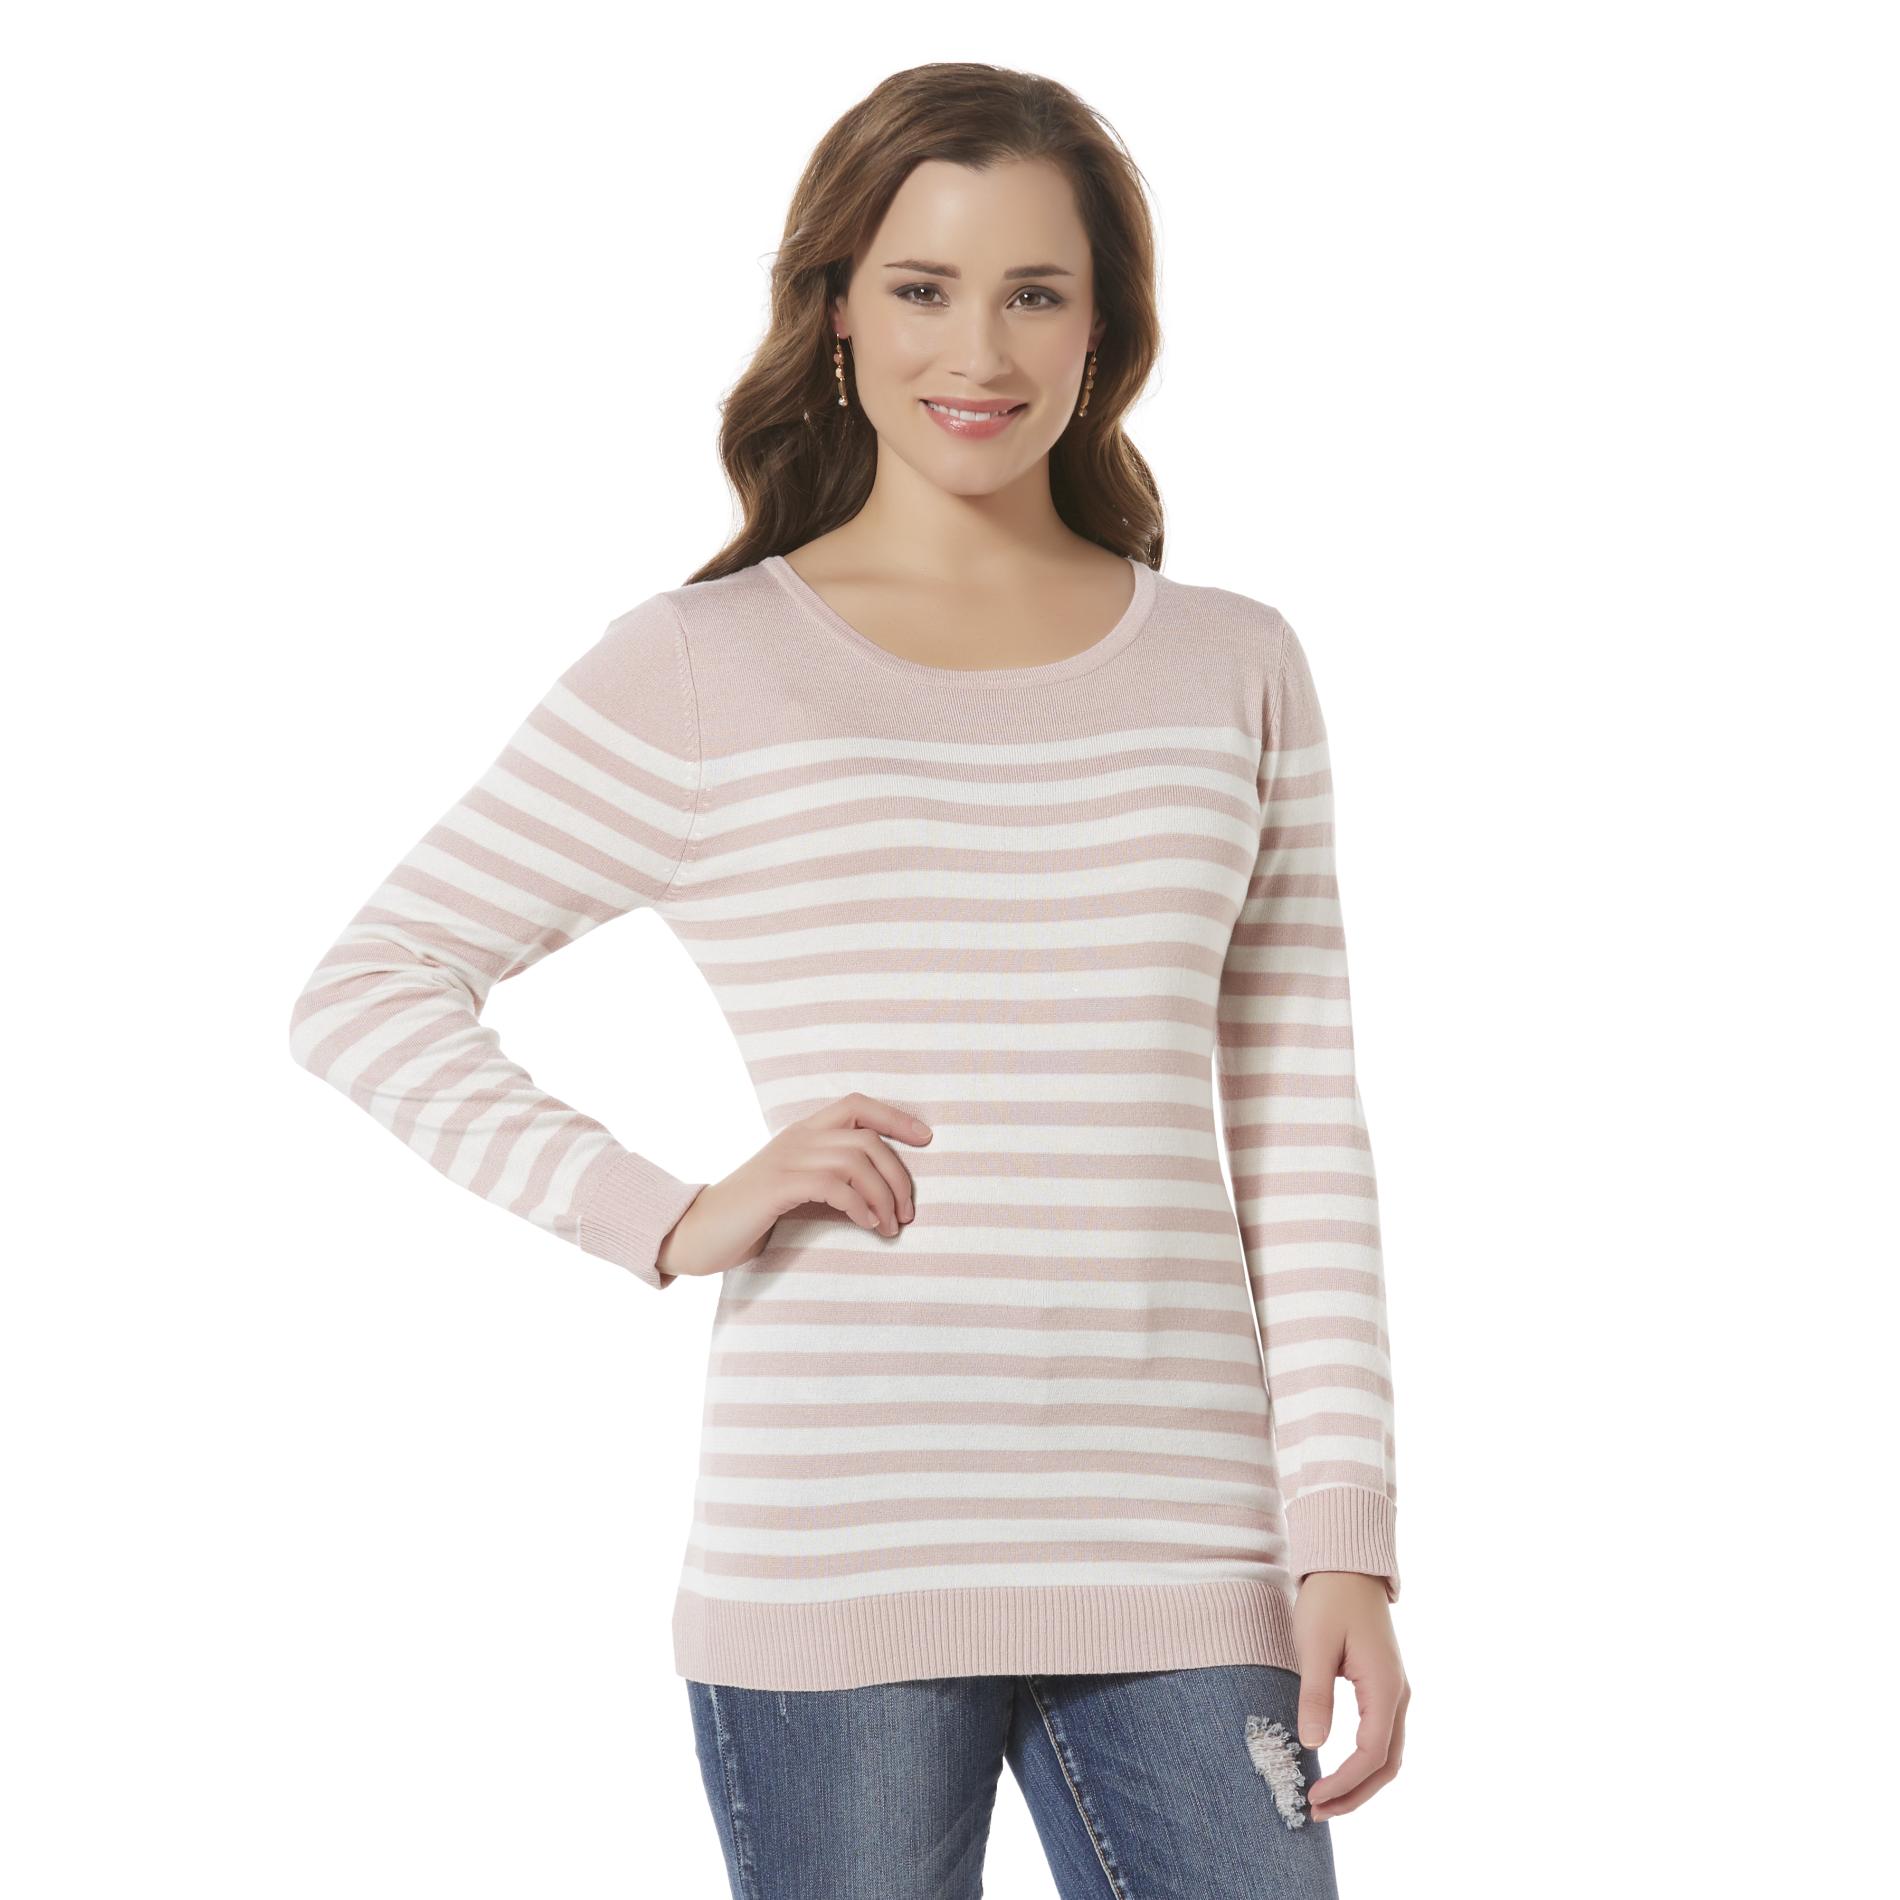 Women's Silky Sweater - Striped